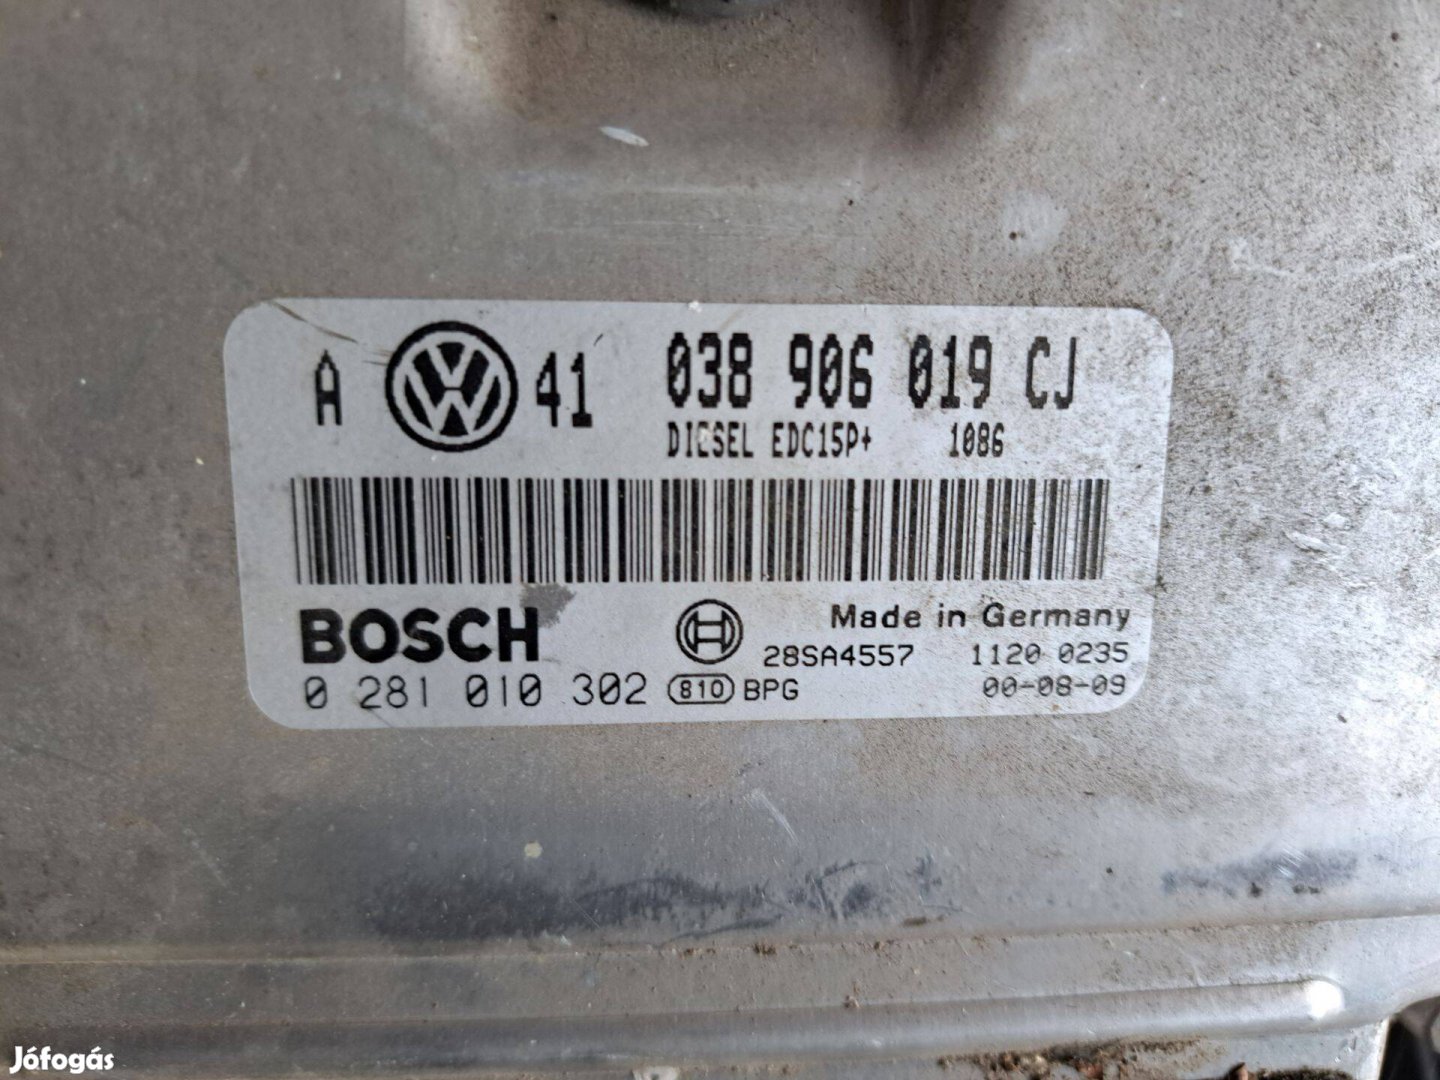 VW Golf IV 038 906 019 cj motorvezérlő